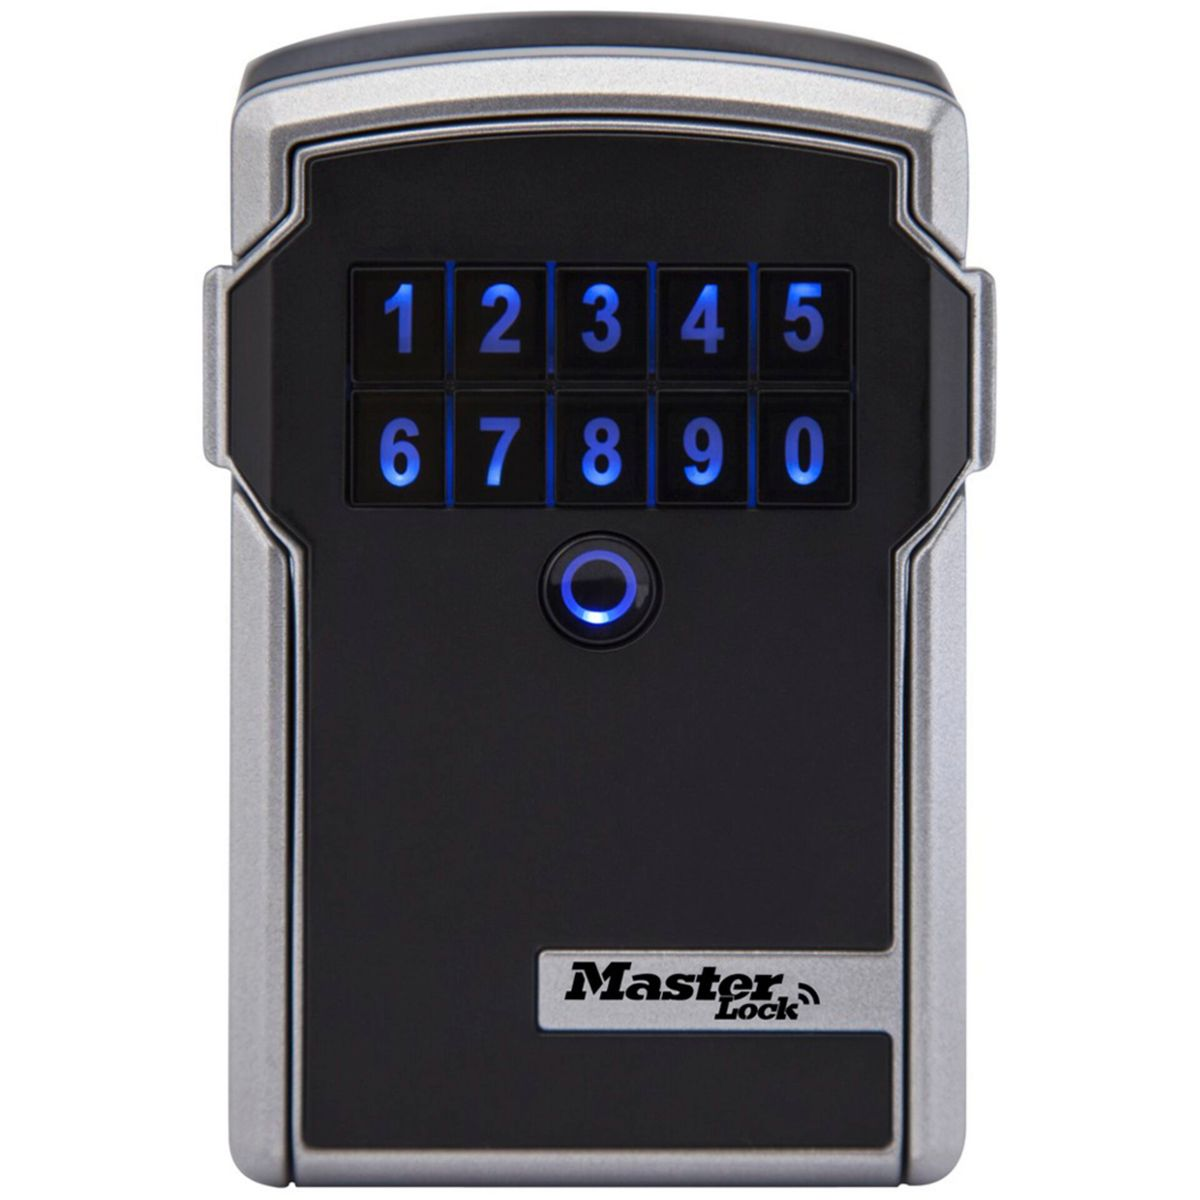 grau Master Schlüsselkasten Bluetooth MASTERLOCK schwarz 5441EURD Lock Schlüsseltresor schwarz grau /